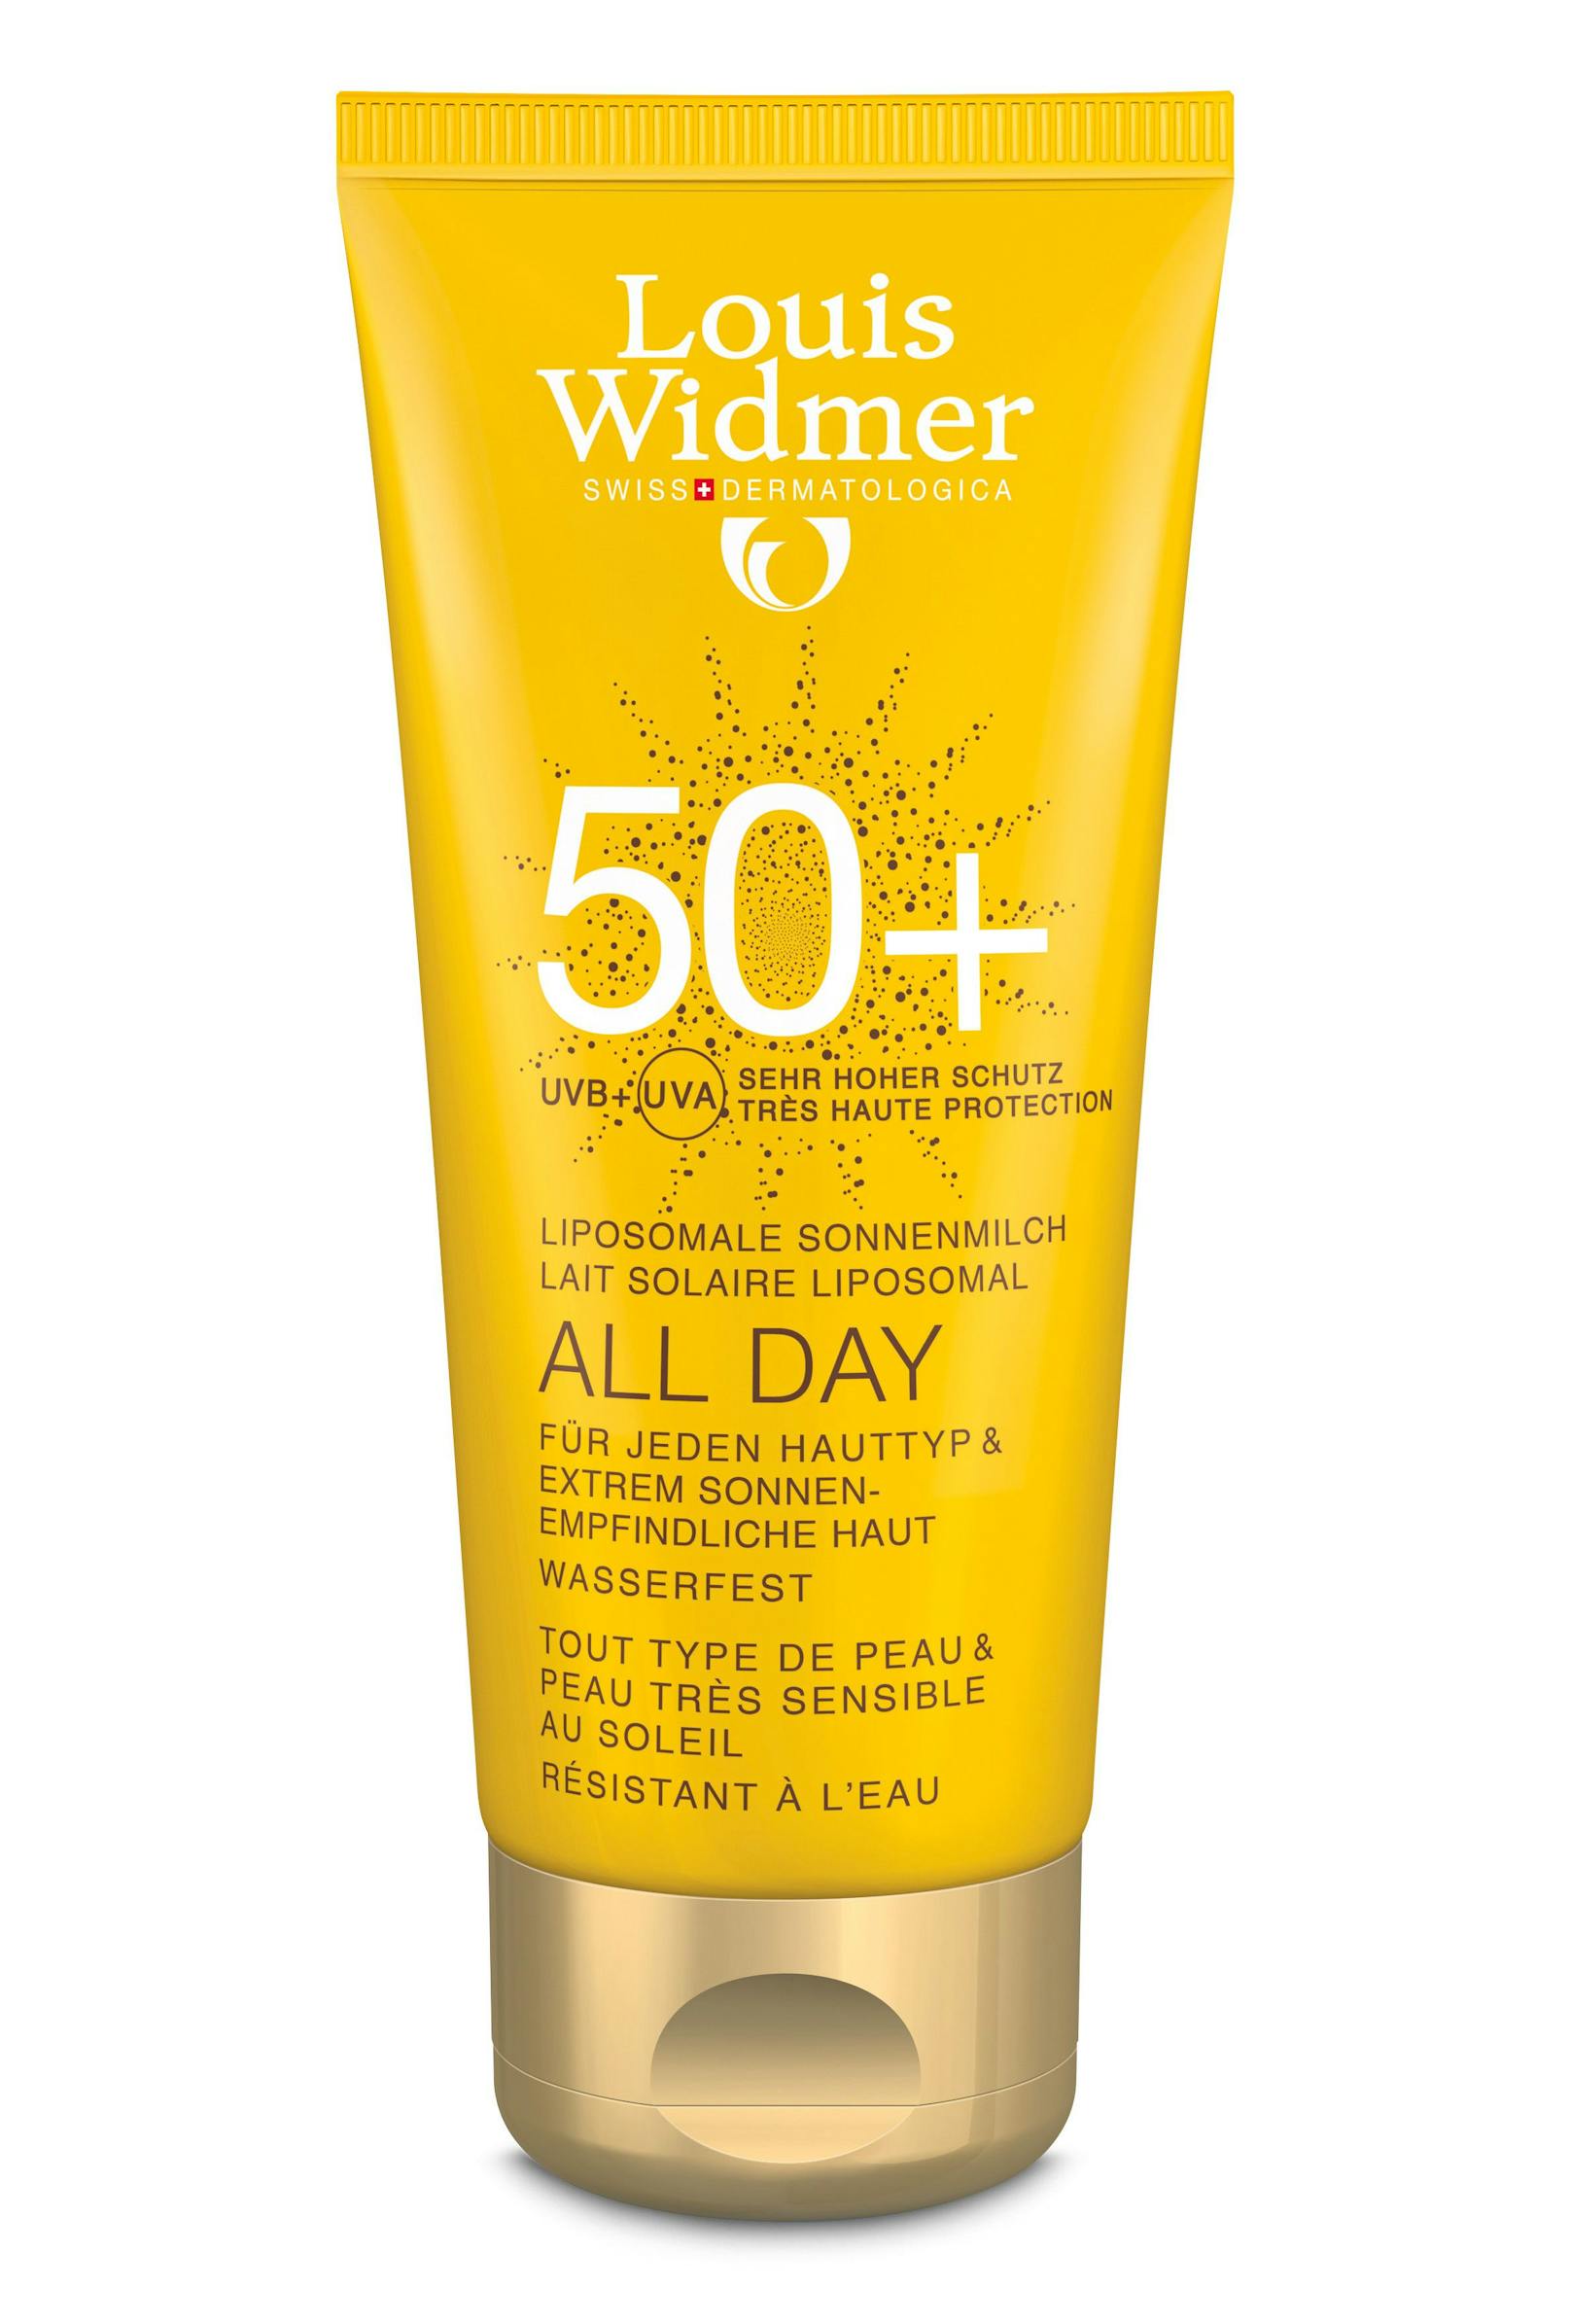 <strong>KÖRPER:</strong> Einen <strong>hohen UV-Schutz </strong>für jeden Hauttyp bietet die liposomale Sonnenmilch "All Day" von Louis Widmer (22,50 Euro).